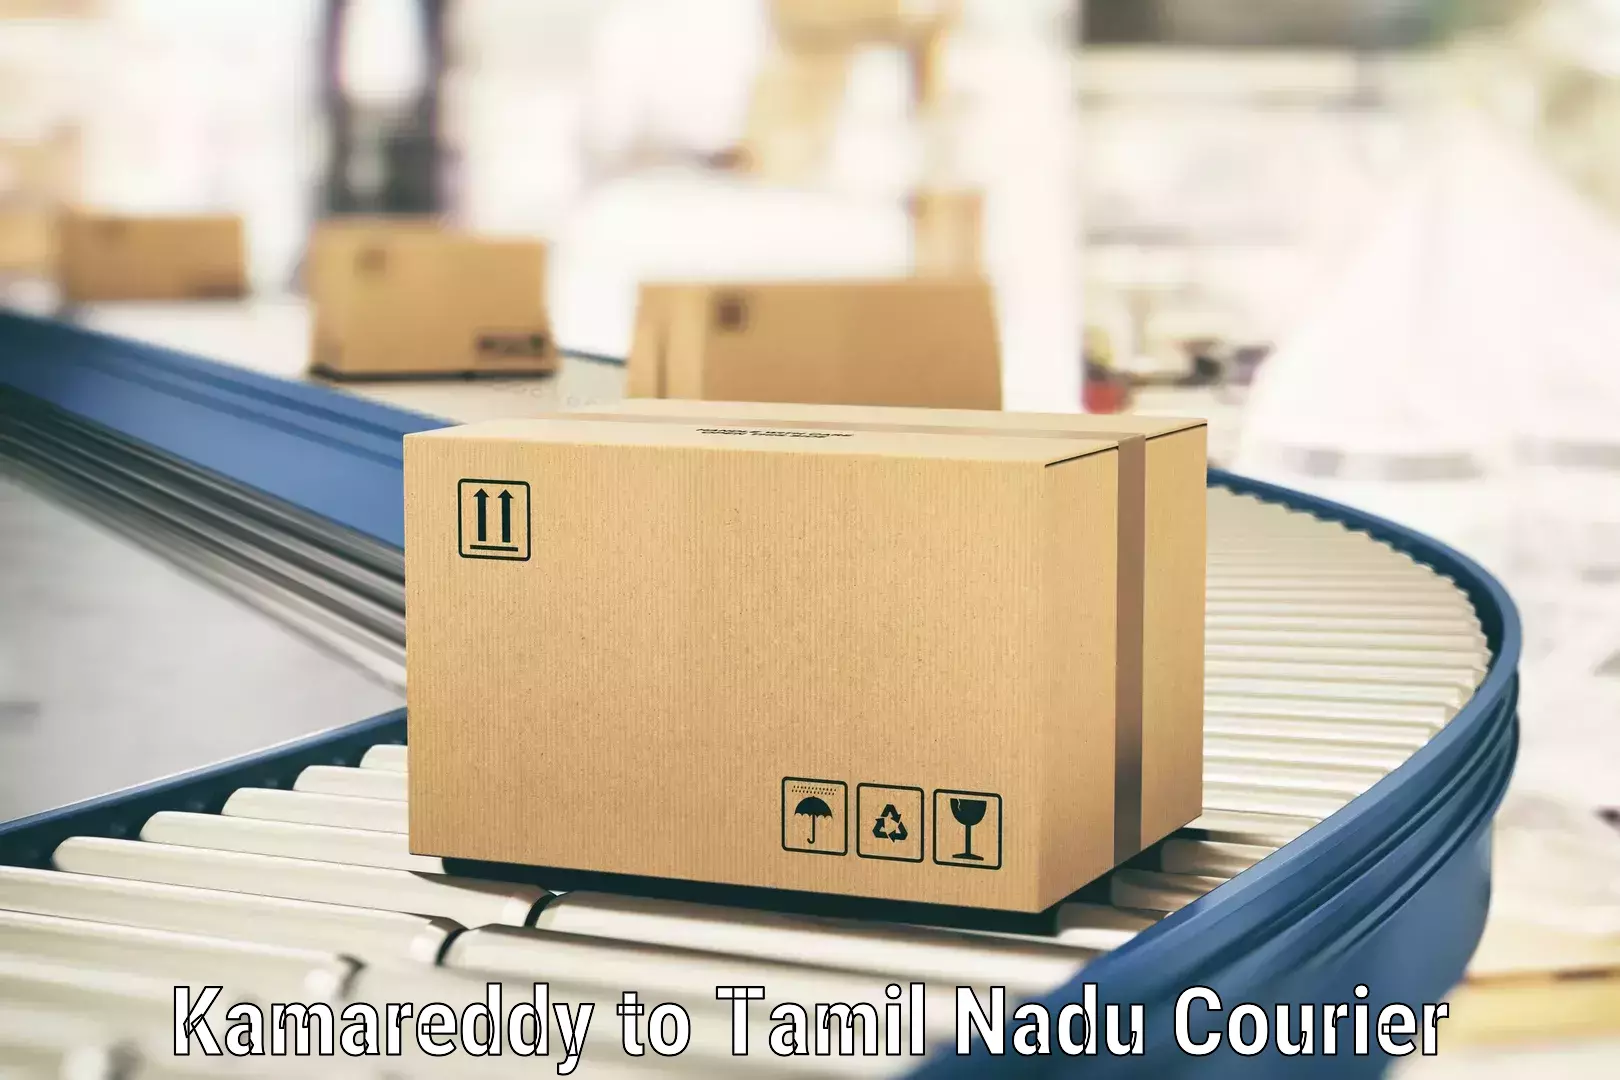 Premium courier services Kamareddy to Tiruchirappalli